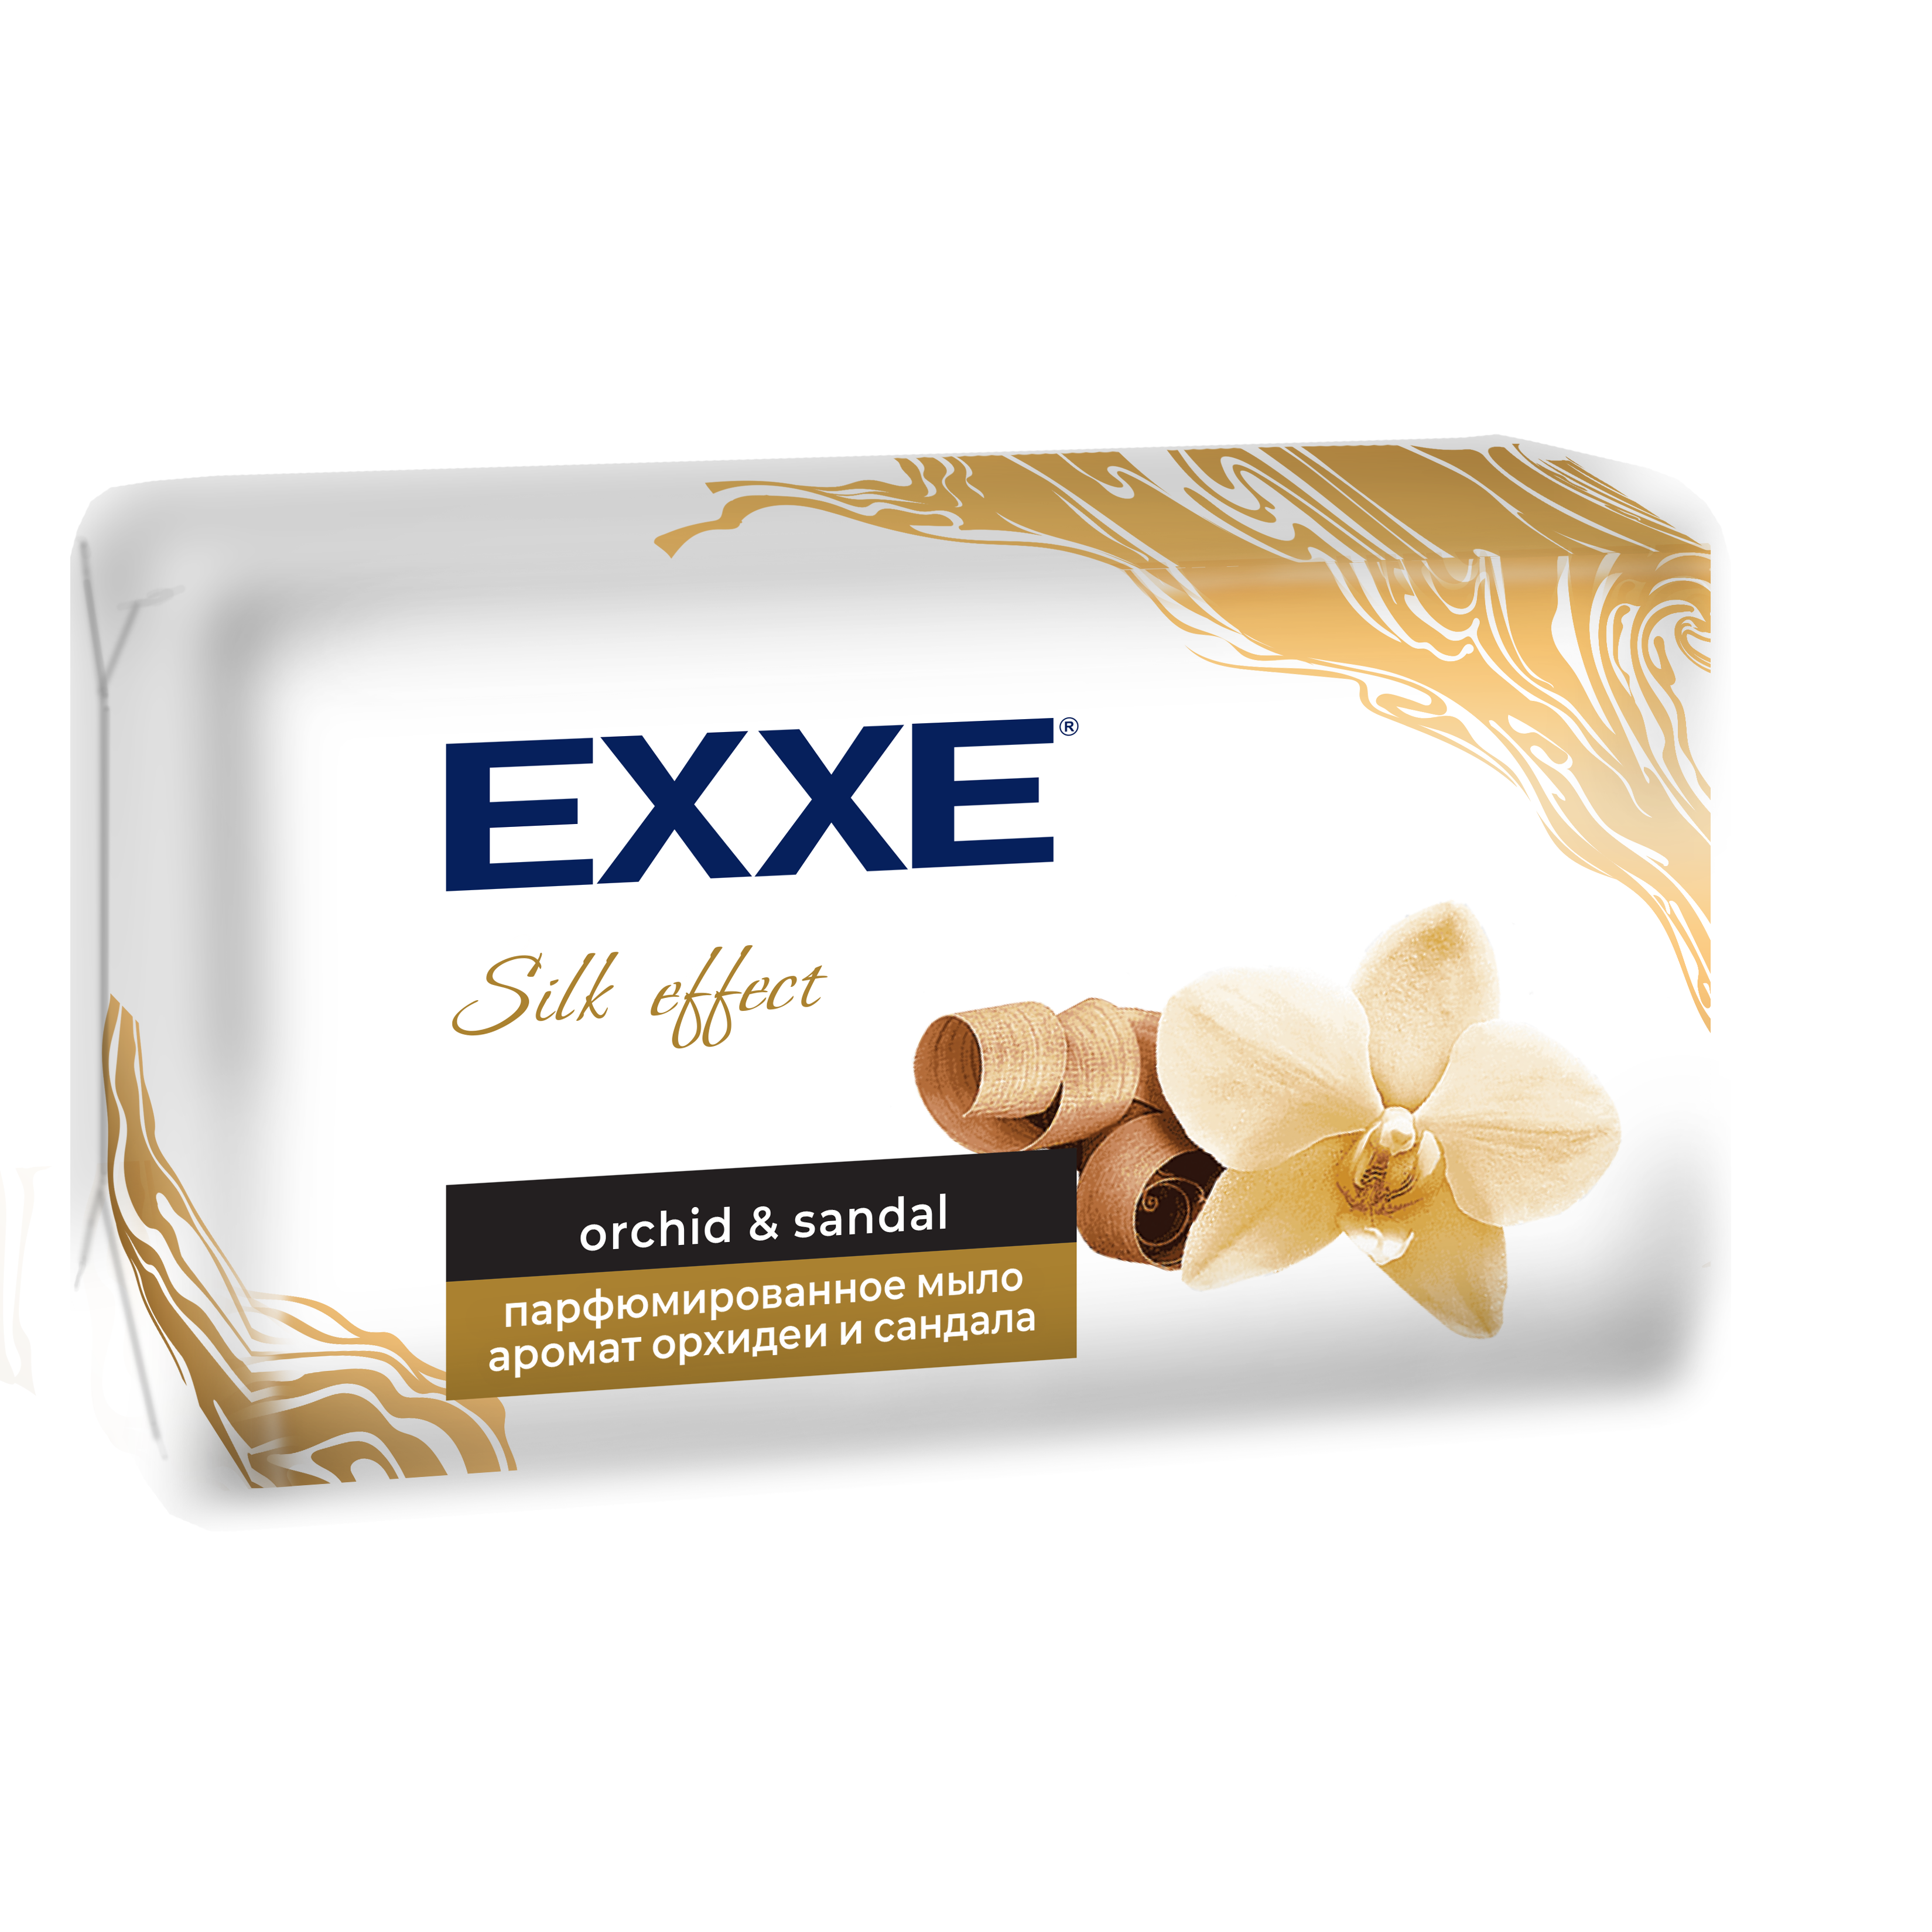 Мыло парфюмированное EXXE Silk Effect аромат Орхидеи и Сандала, 140 г la fabrique парфюмированное мыло для рук c ароматом табака и бергамота 300 0